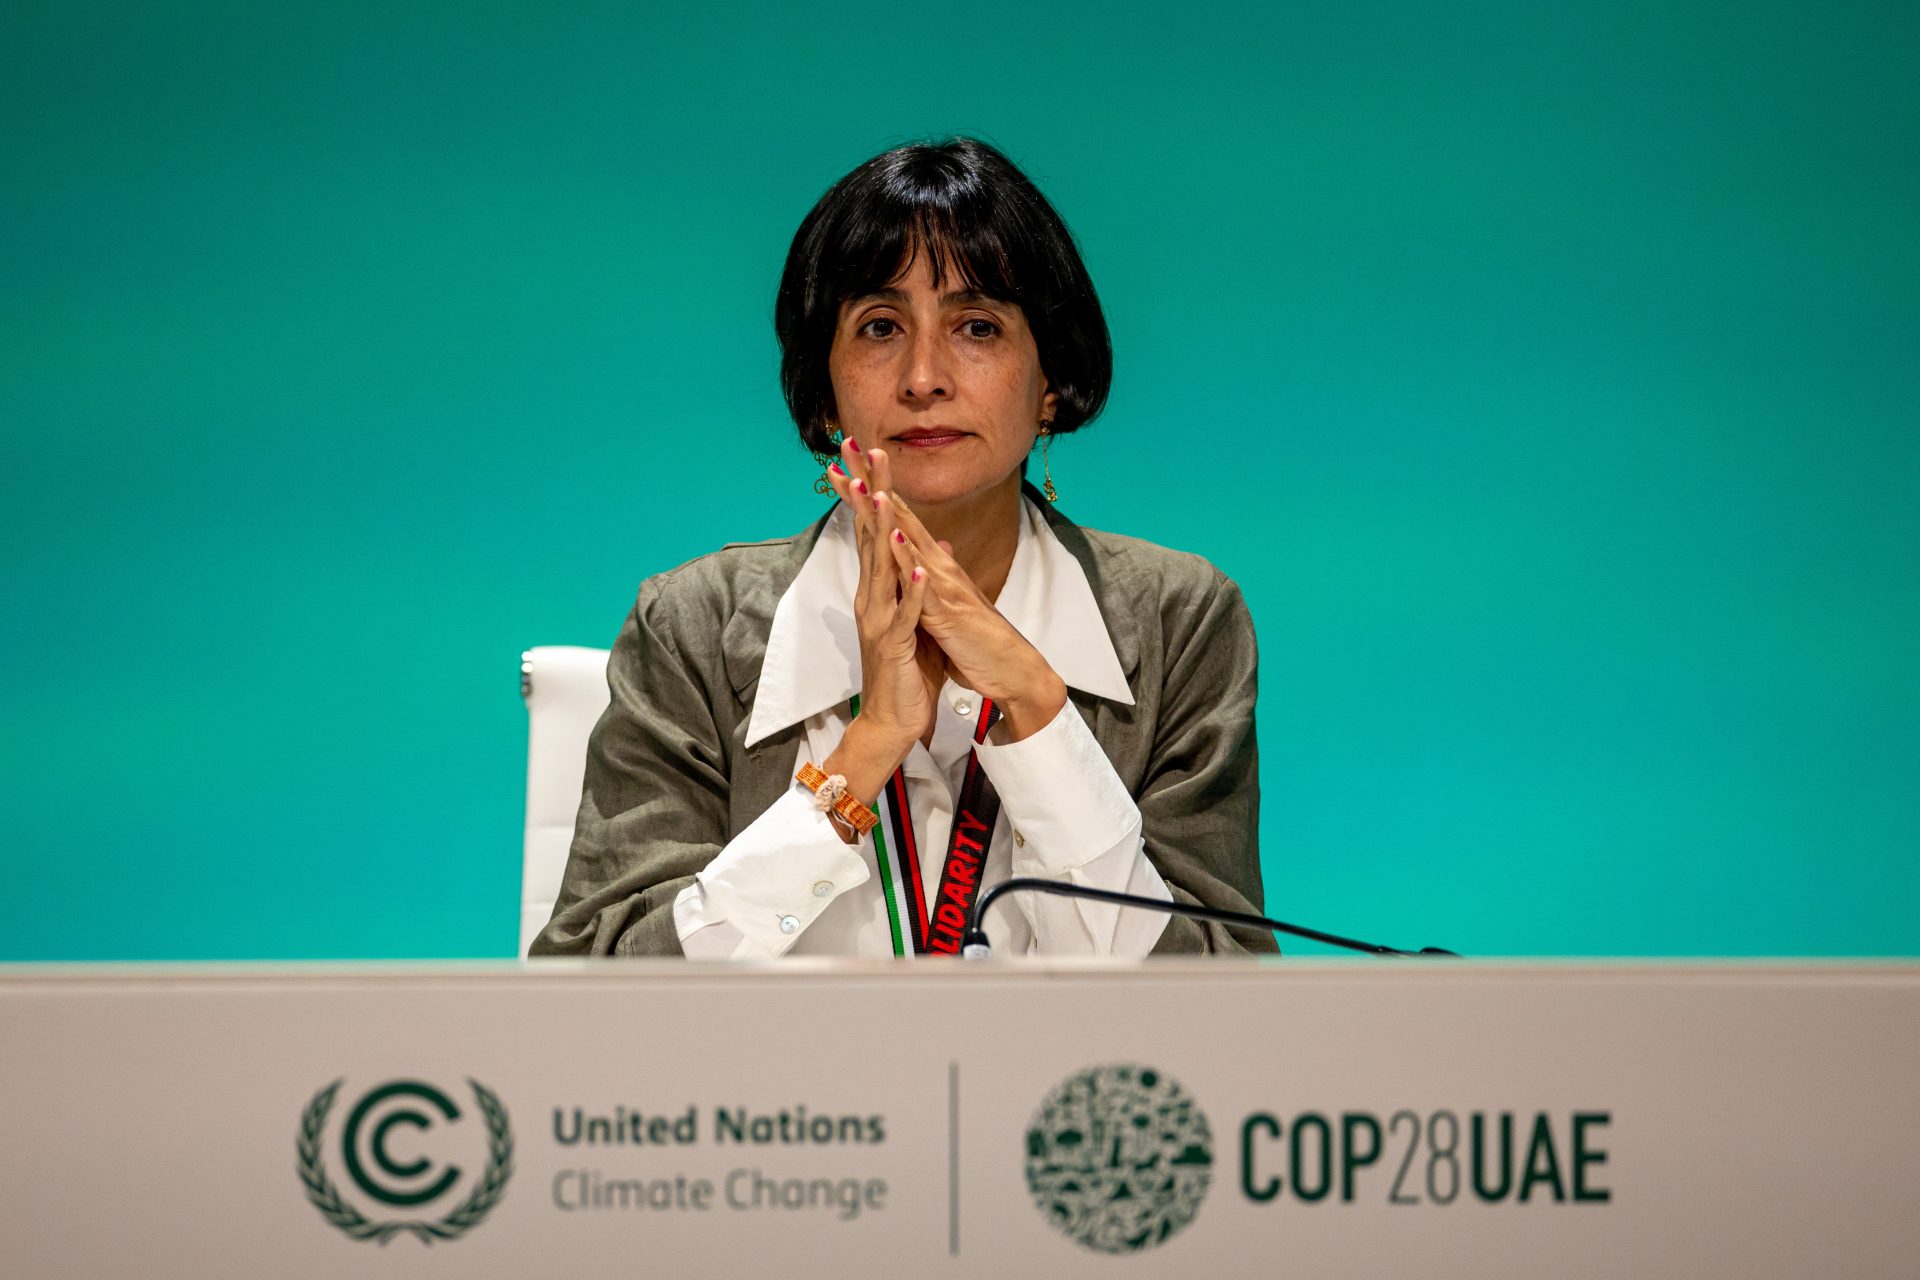 La ministra de medioambiente de Colombia, Susana Muhamad. EFE/EPA/MARTIN DIVISEK